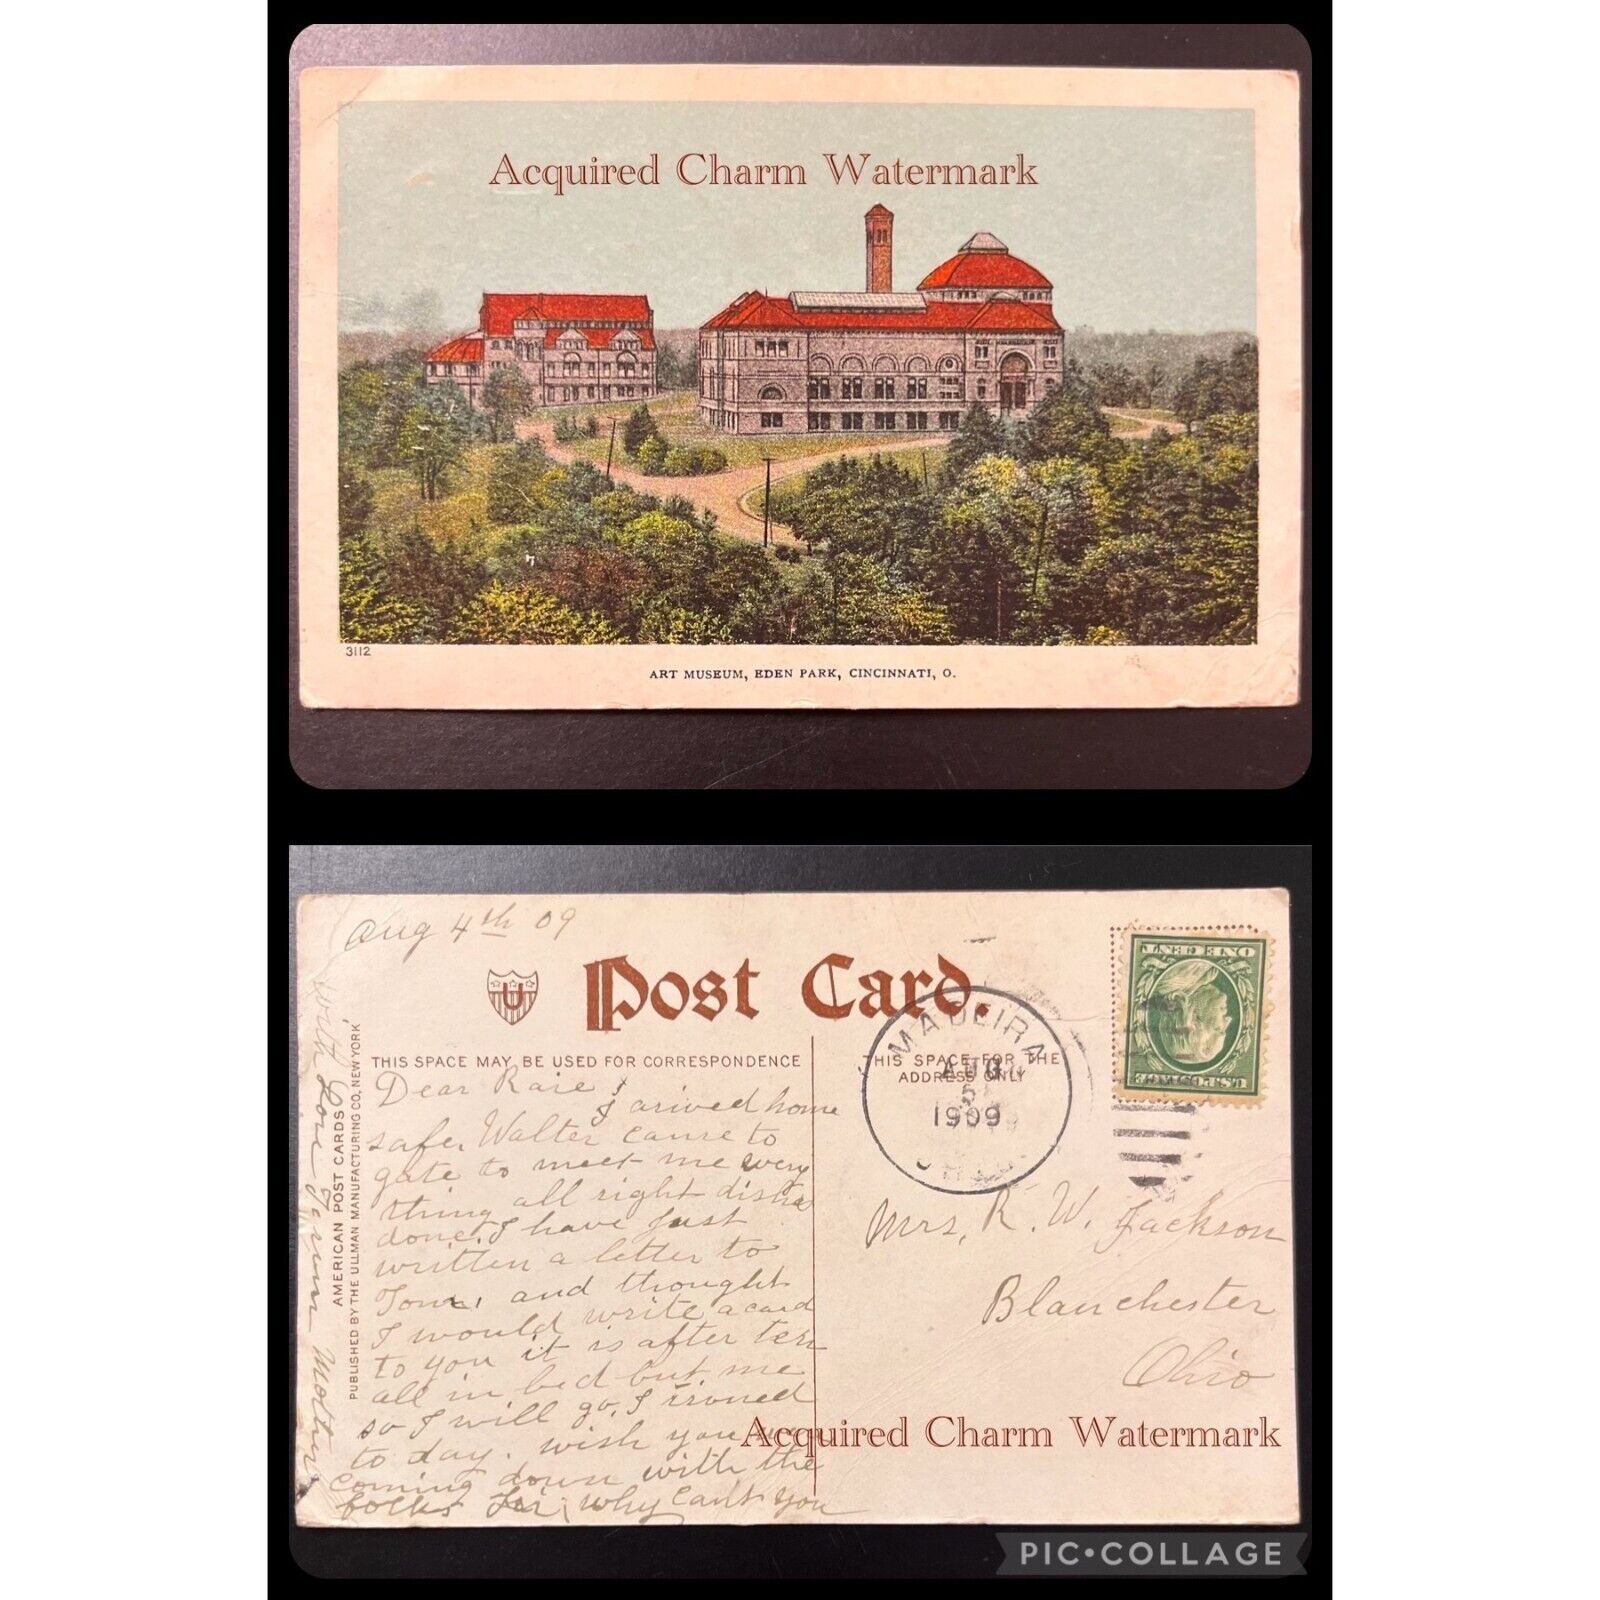 Antique Postcard, Art Museum, Cincinnati, O. August 5, 1909